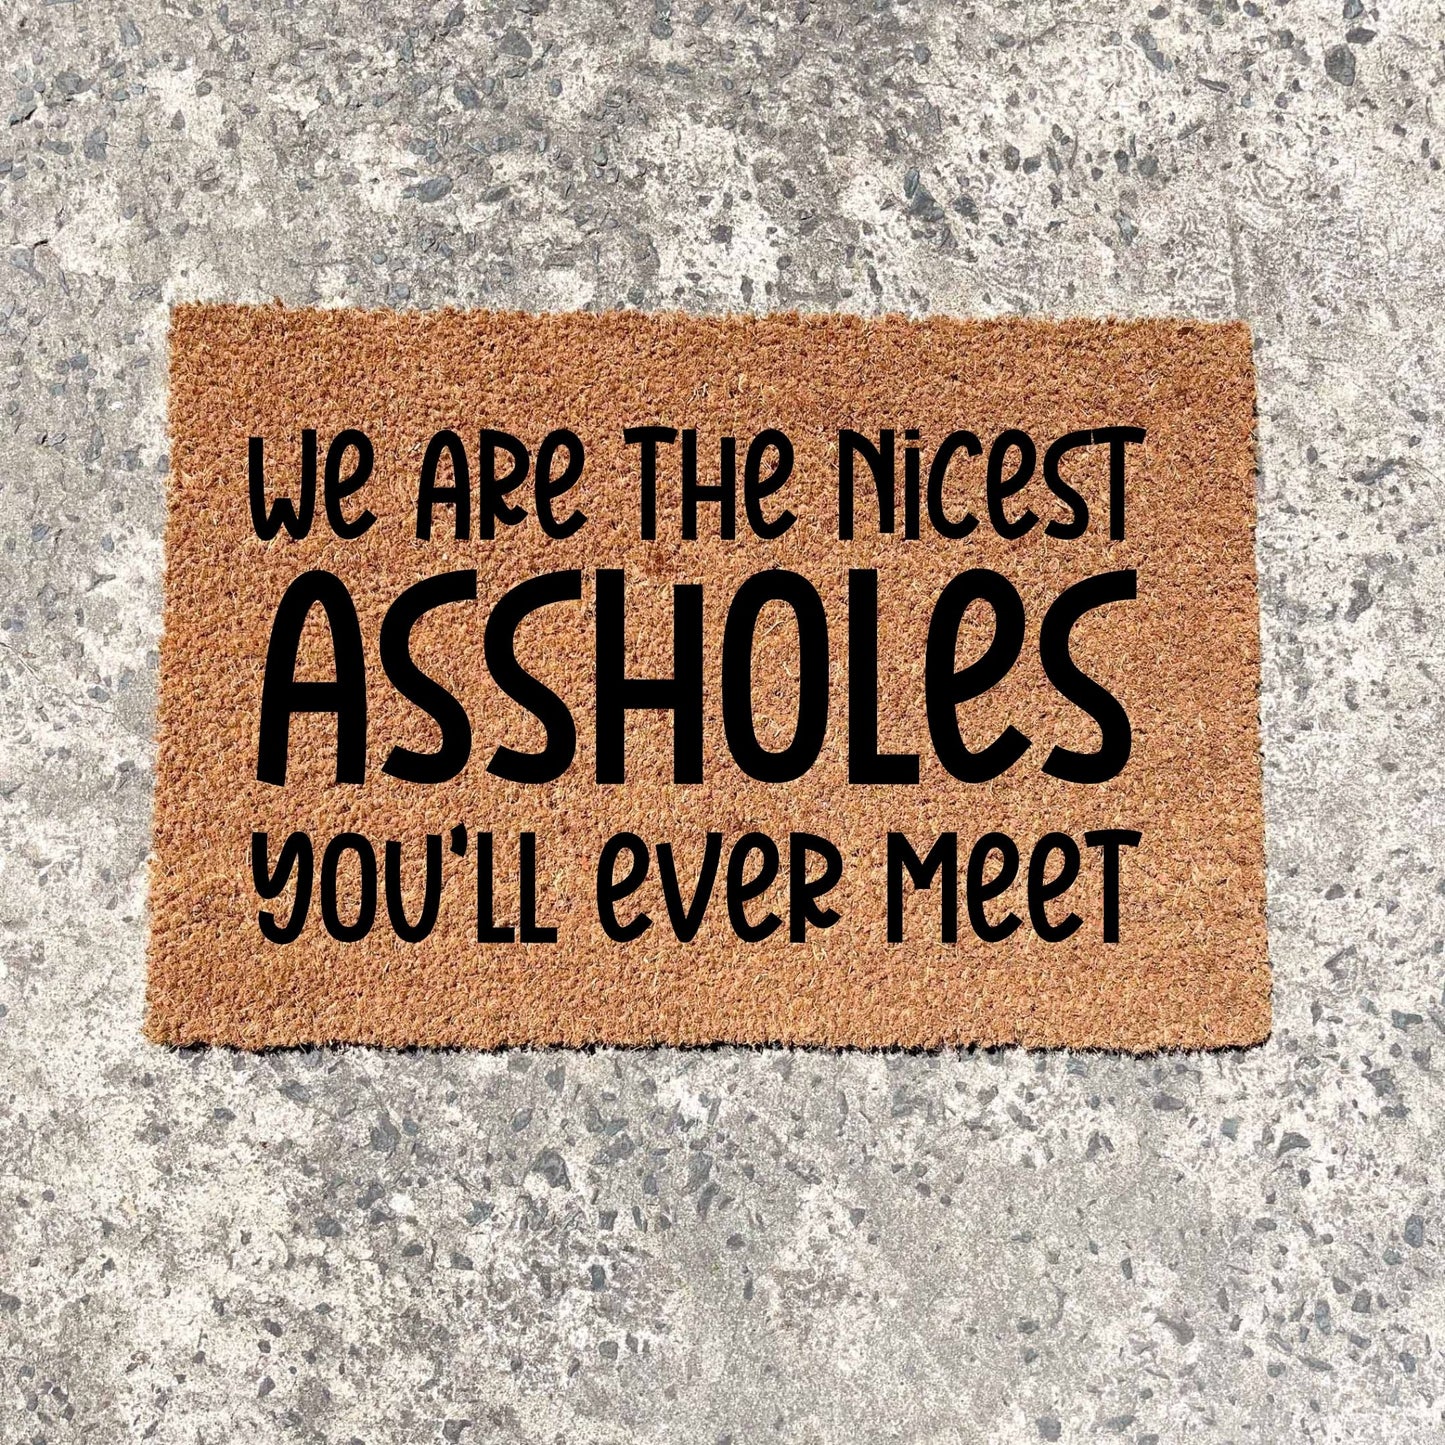 We're the nicest assholes doormat, unique doormat, custom doormat, personalised doormat